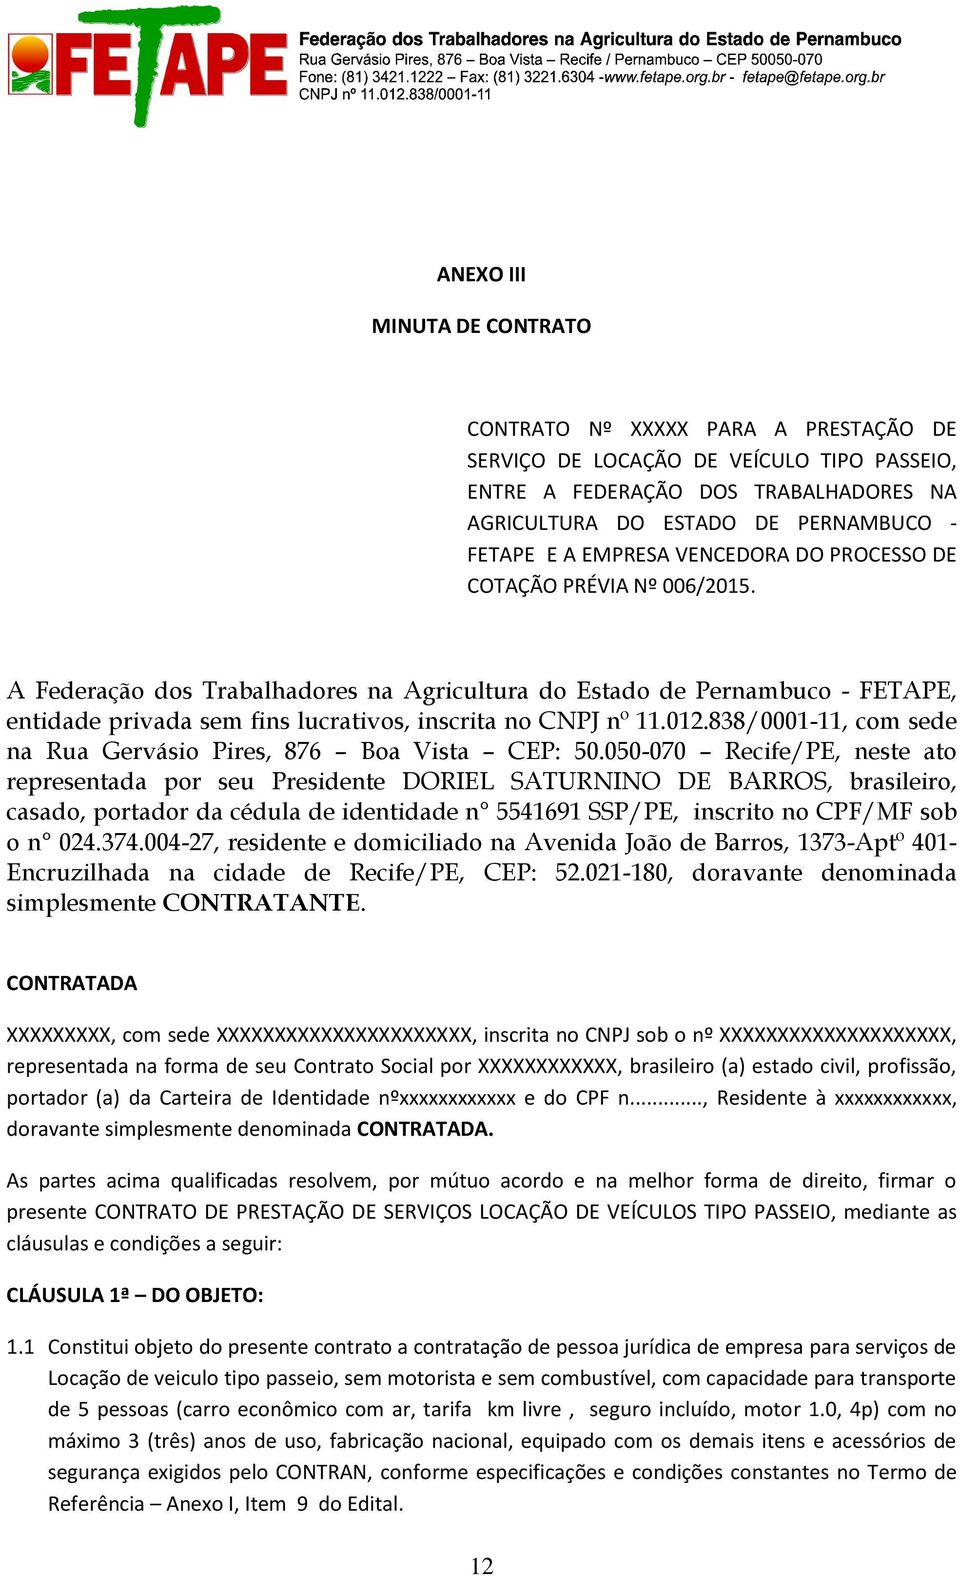 A Federação dos Trabalhadores na Agricultura do Estado de Pernambuco - FETAPE, entidade privada sem fins lucrativos, inscrita no CNPJ nº 11.012.